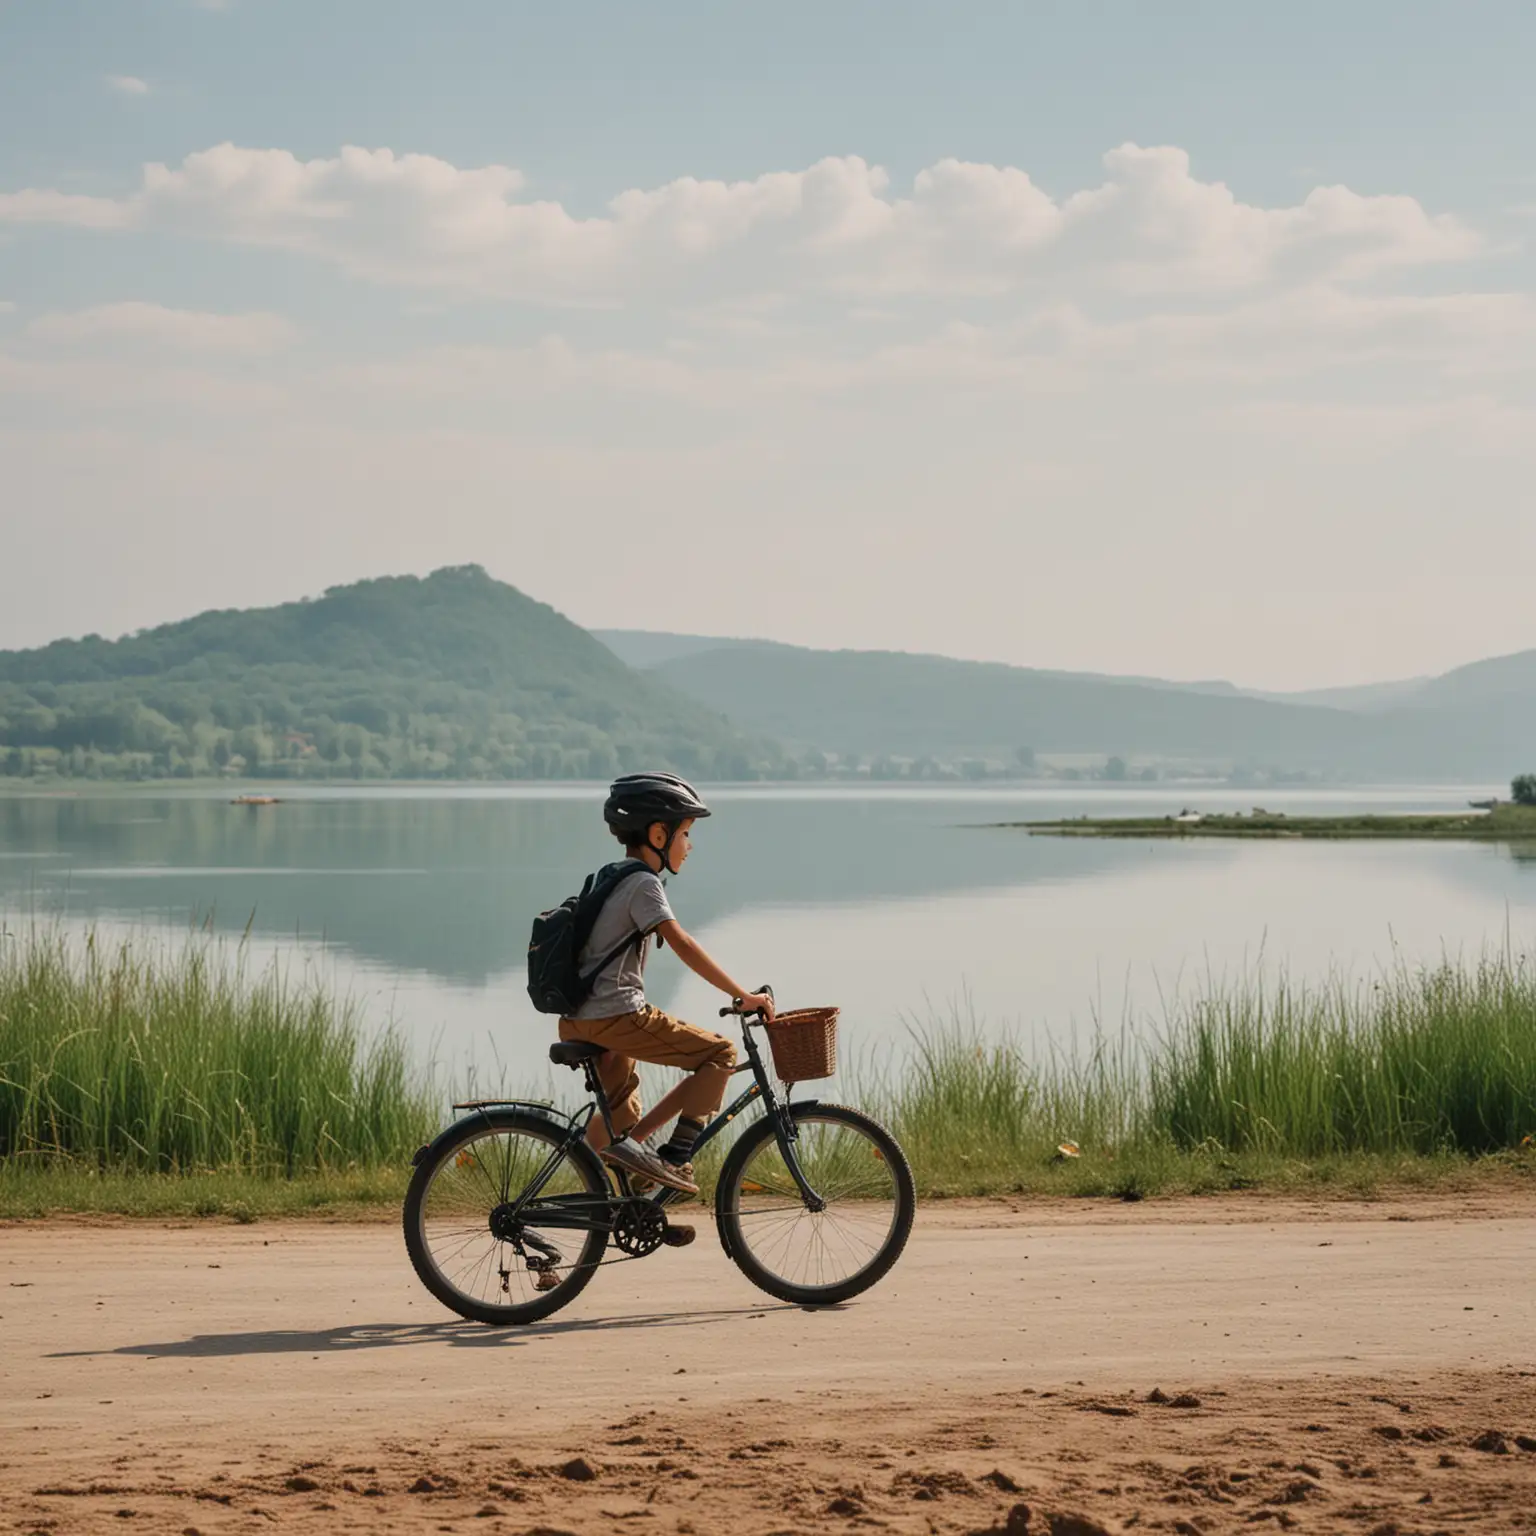 一位少年骑着自行车背景是一片大湖